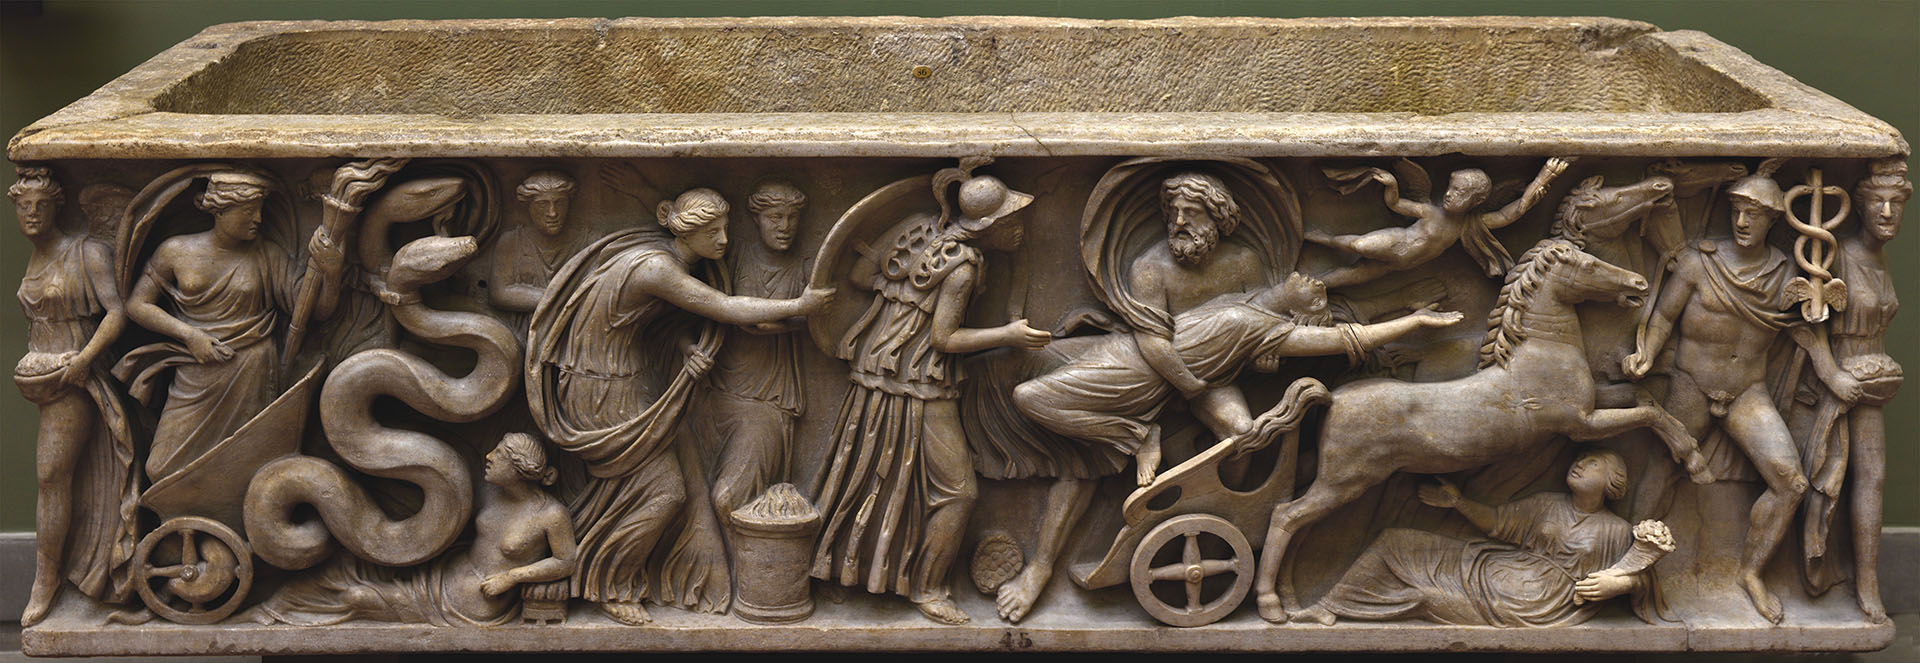 Статуя Геи, Саркофаг со сценой мифа о похищении Персефоны (фронтальная панель)